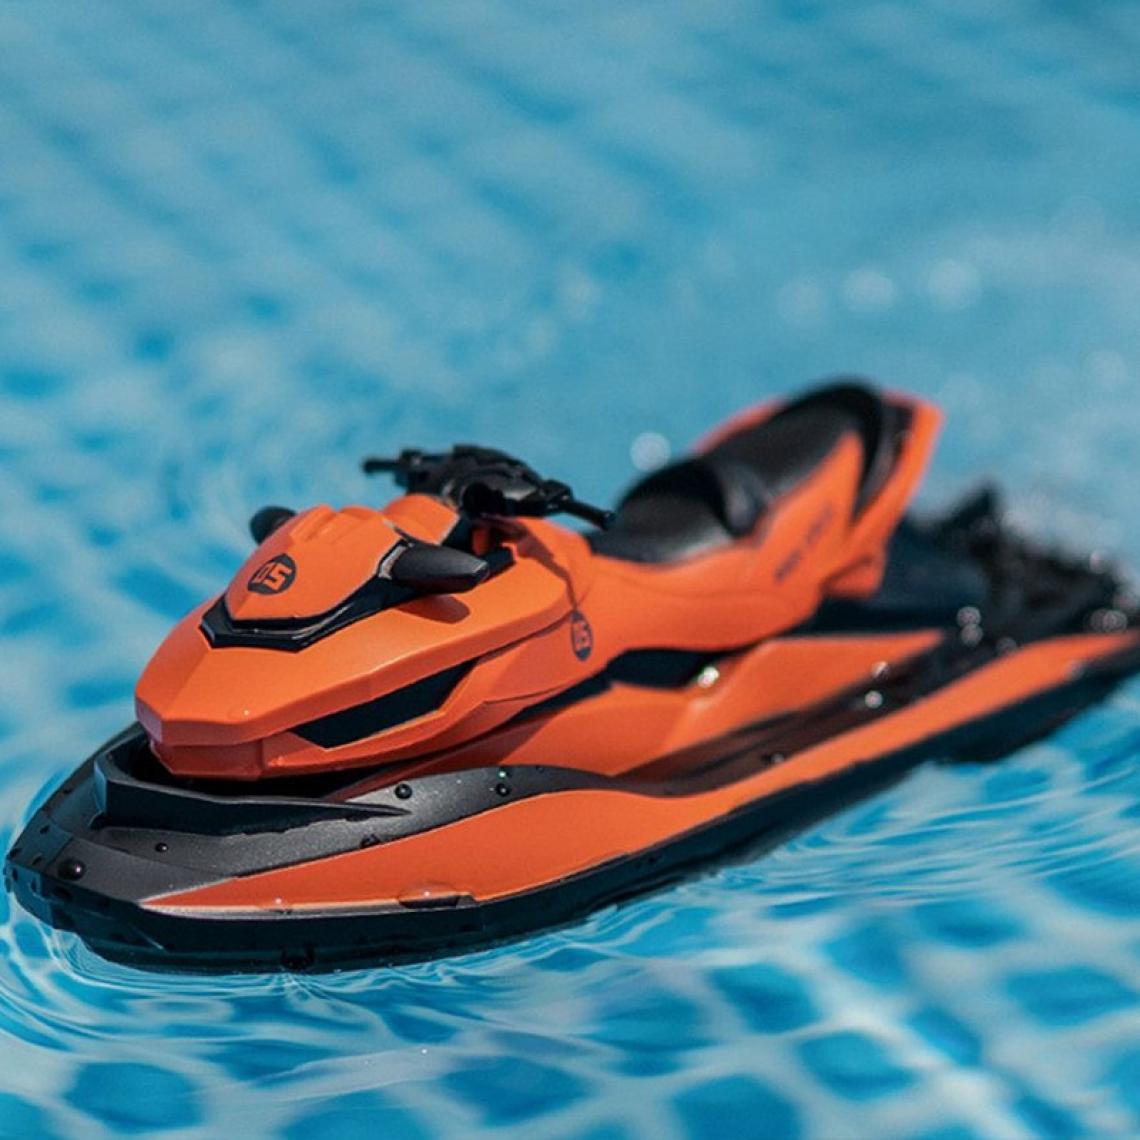 Universal - 2.4g Mini télécommandé RC bateau moto jouet enfant ski d'eau modèle | RC sous-marin(Orange) - Bateaux RC